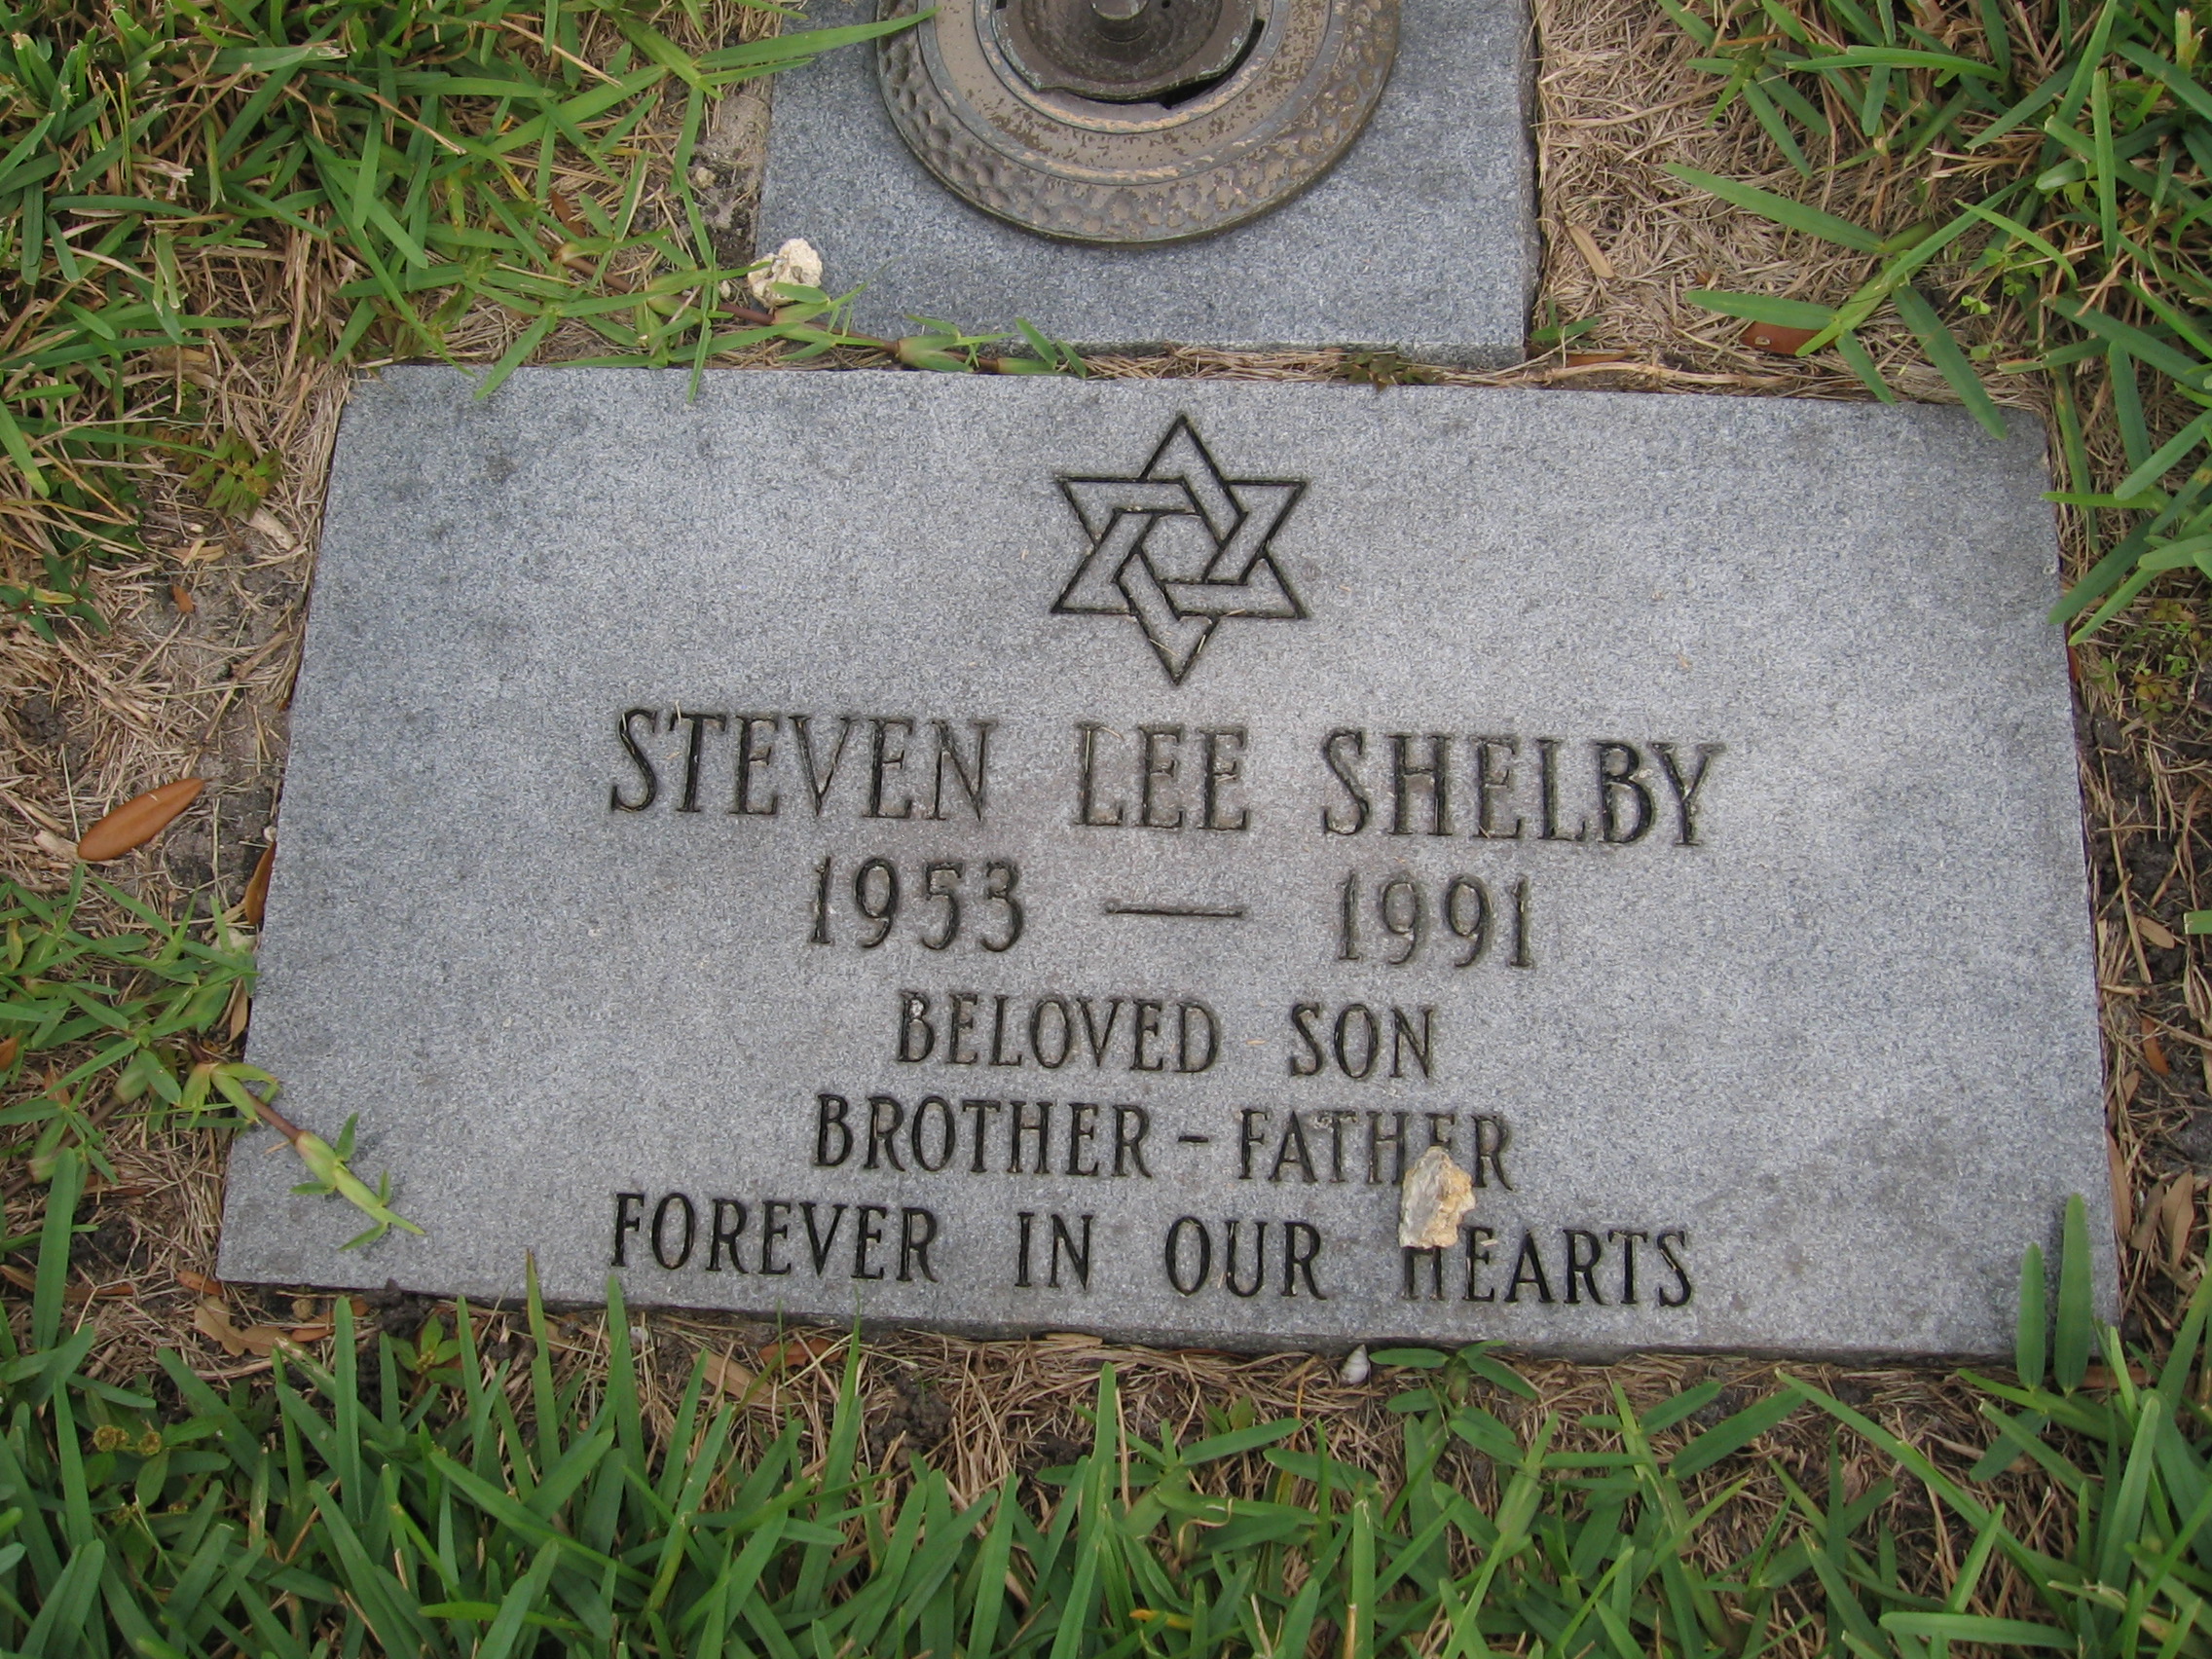 Steven Lee Shelby